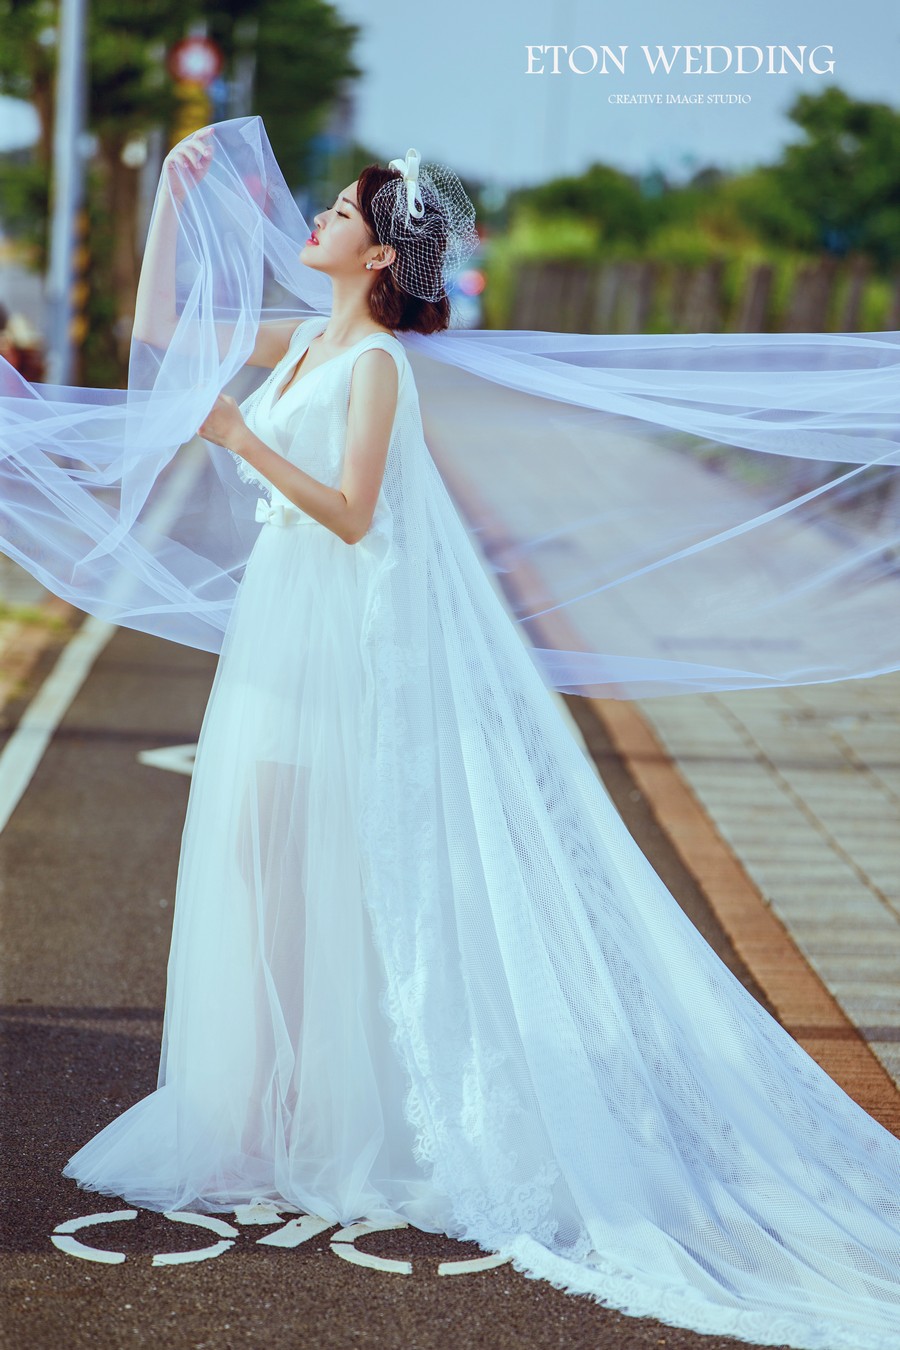 台北 婚紗款式,台北 禮服款式,婚紗出租 台北,台北婚紗價格,台北婚紗,台北 禮服價格